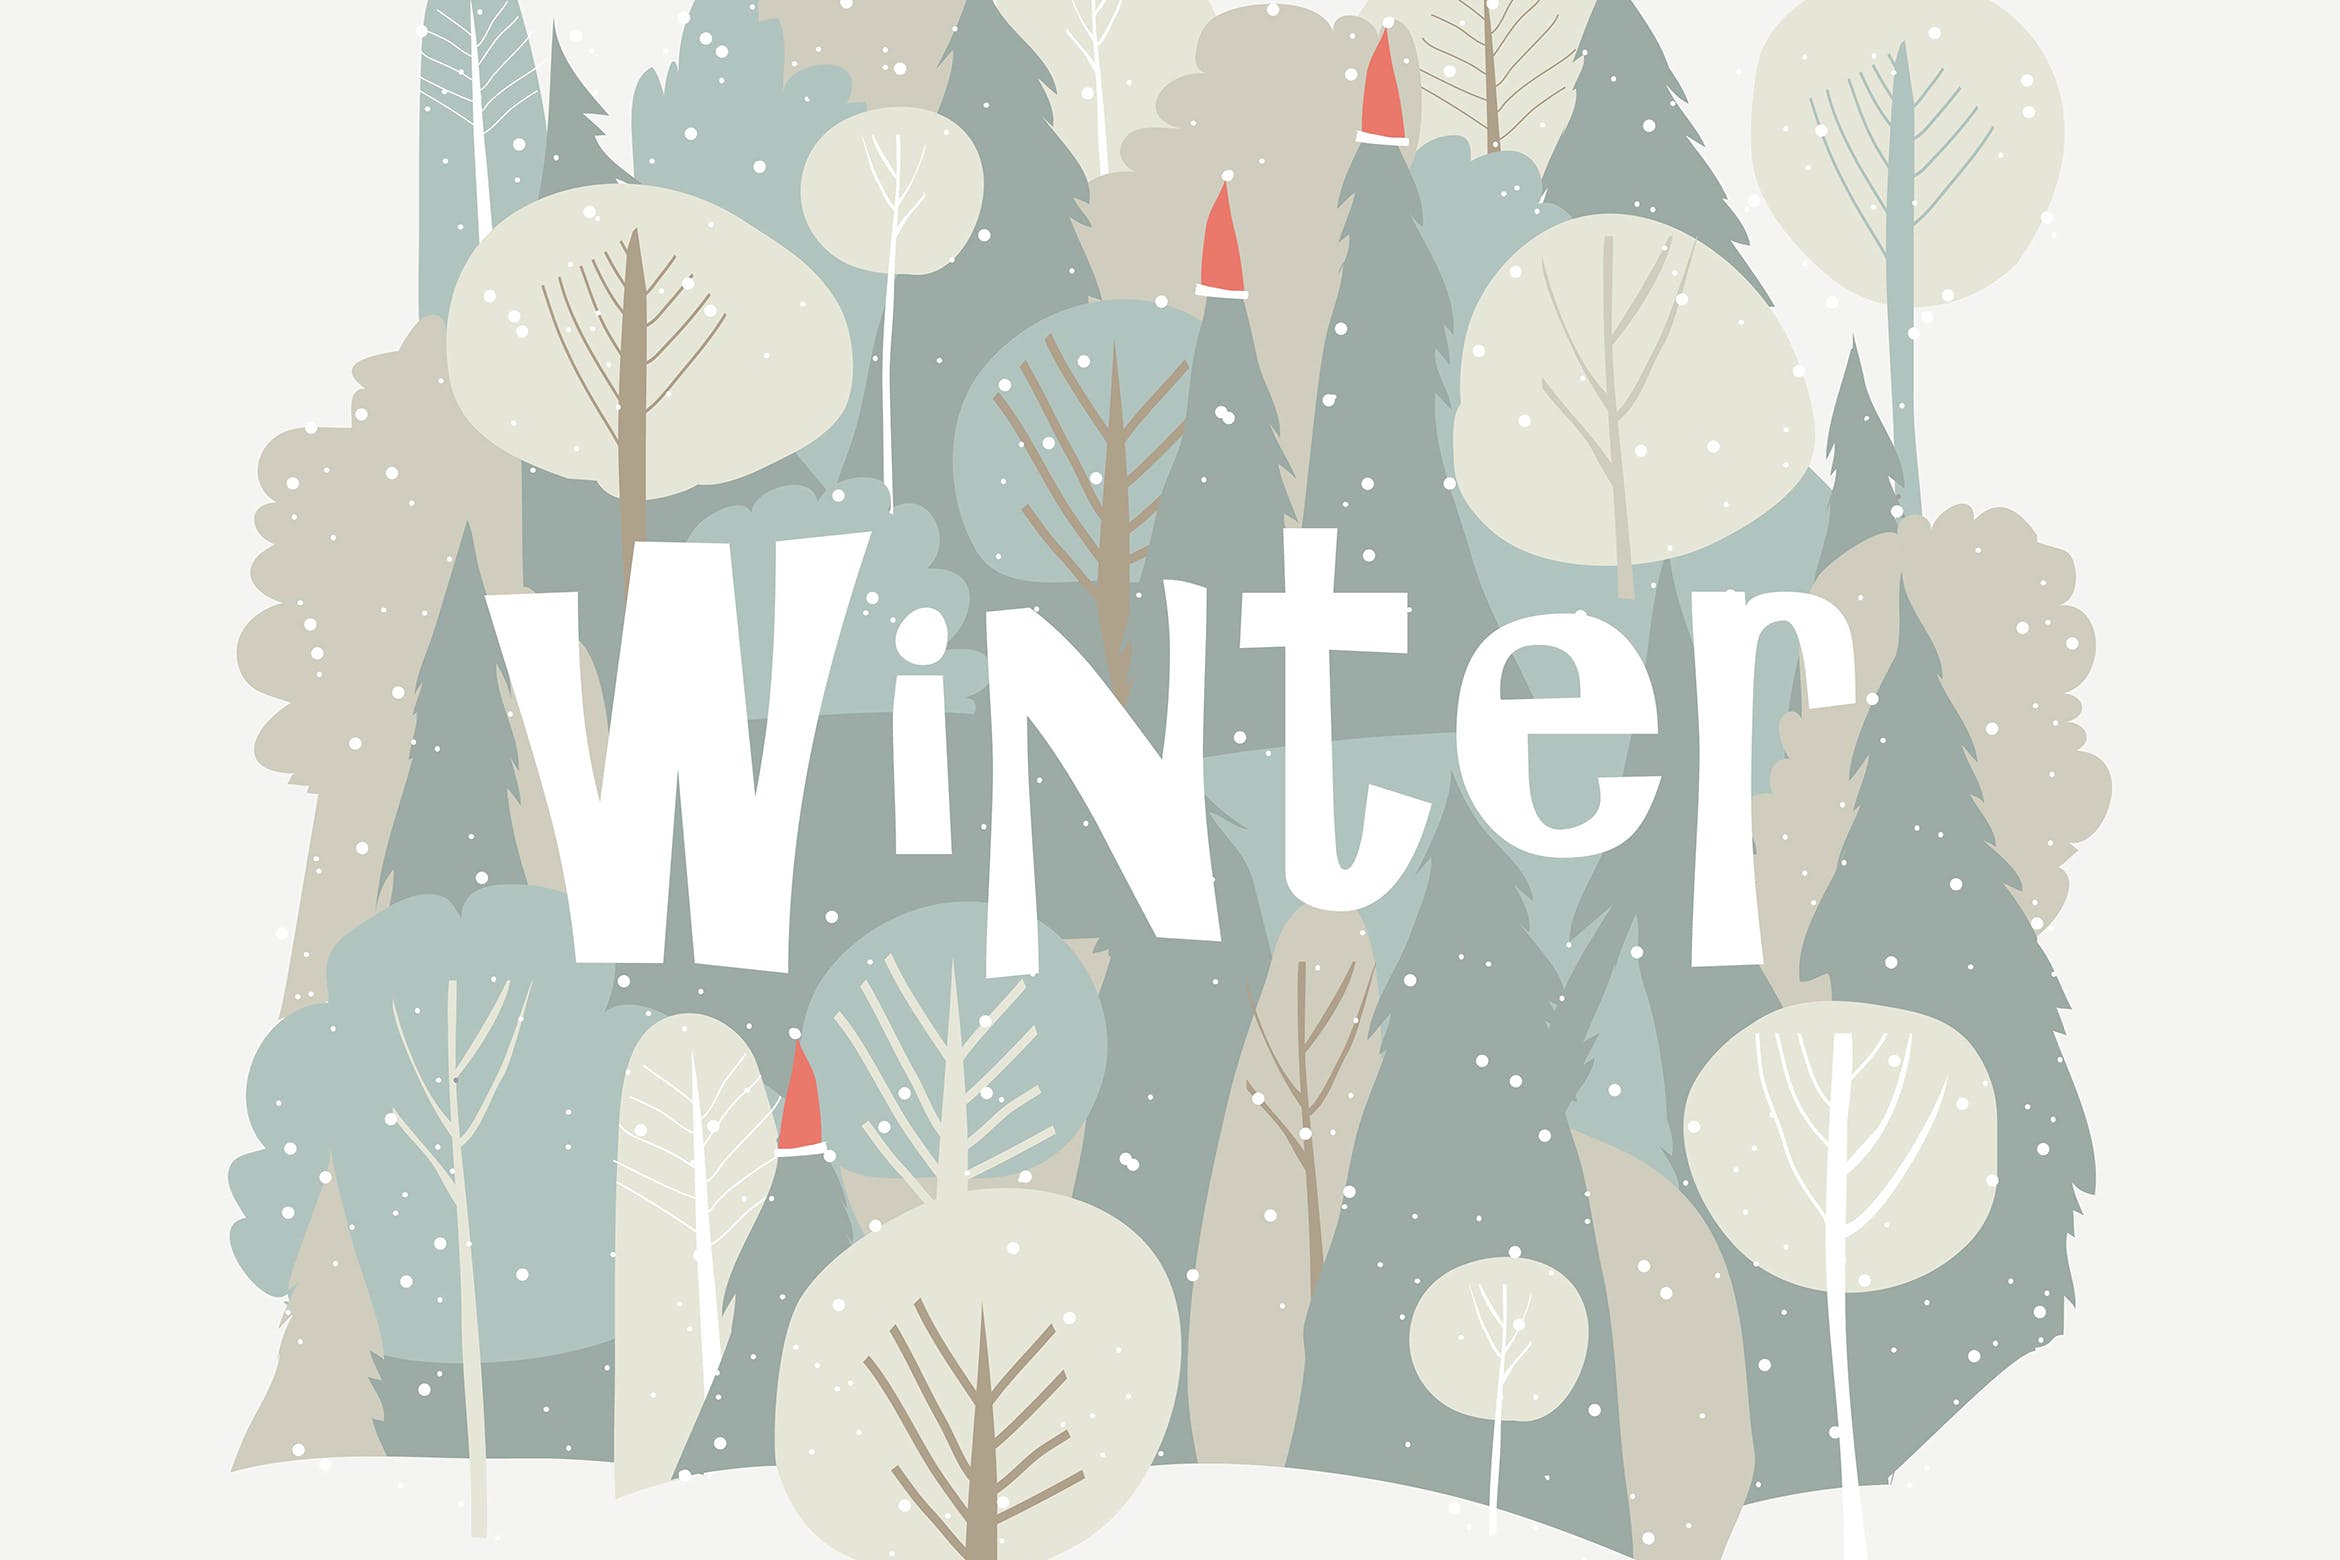 卡通风格冬日森林圣诞节主题矢量背景素材 Vector cartoon winter forest. Christmas background插图